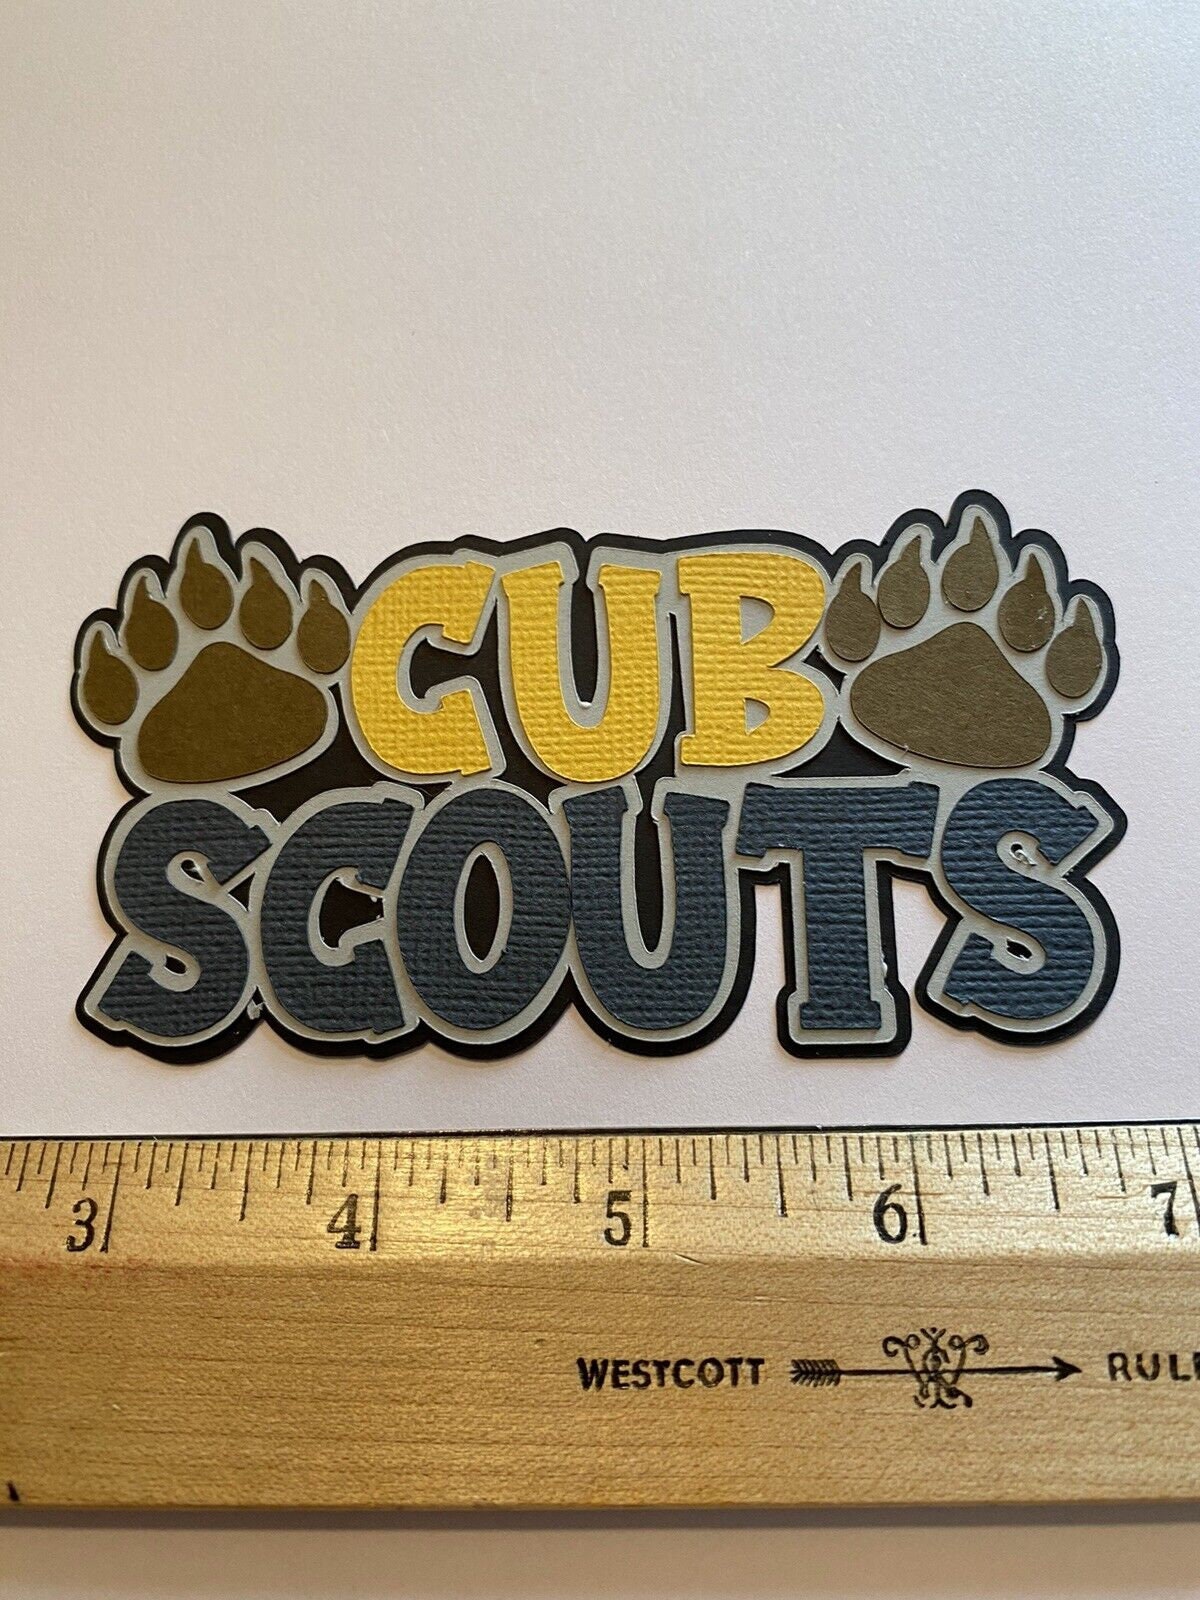 Boy Scouts Of America 12x12 Cub Scout Scrapbook Album & More Paper &  Stickers